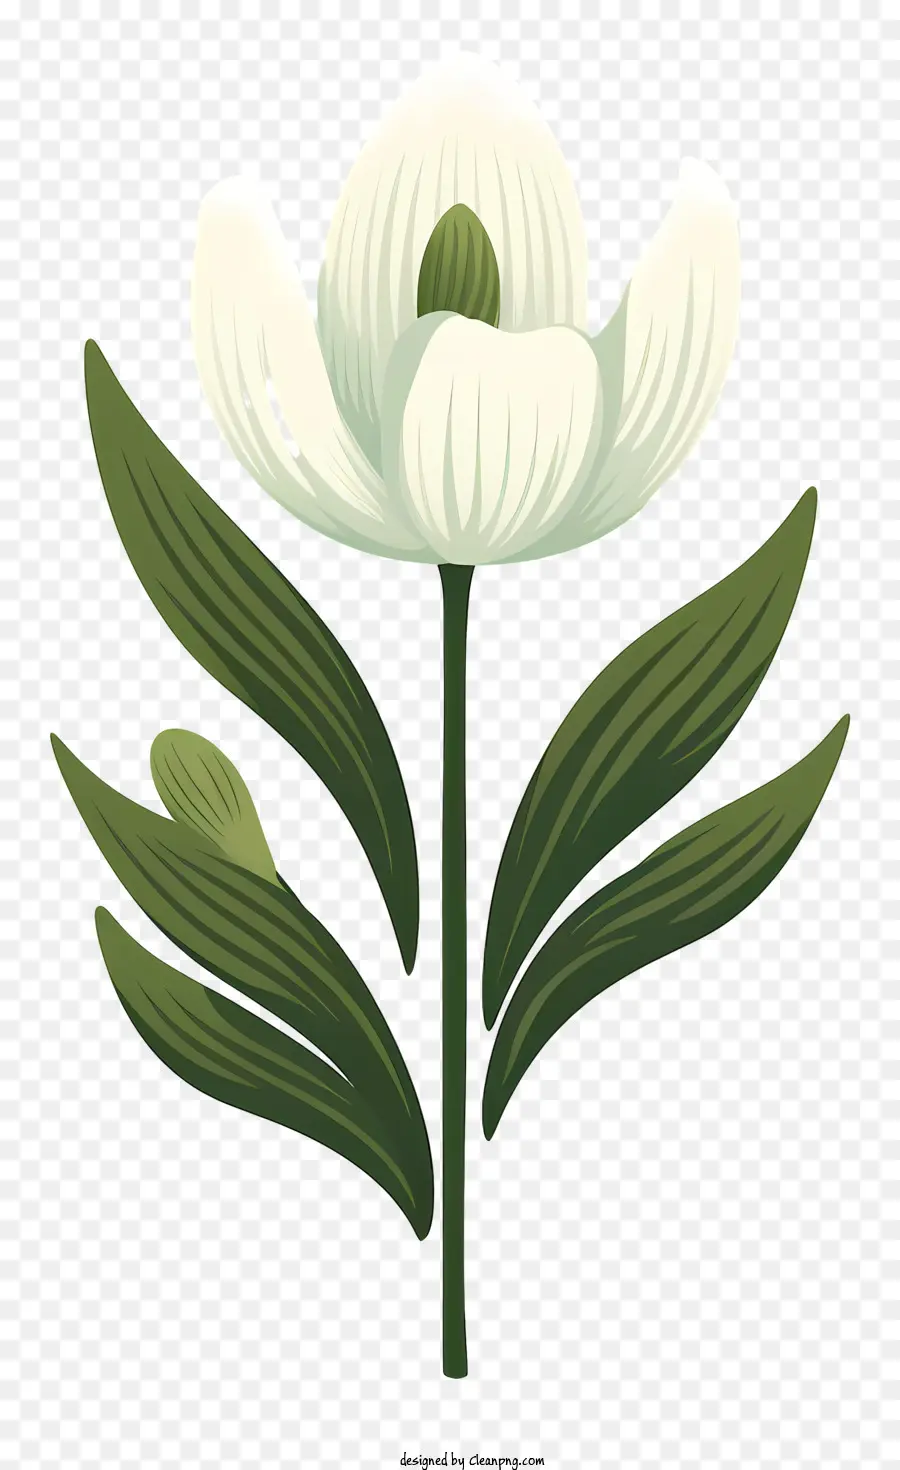 weiße Blume - Zeichnung der weißen Blume mit grünen Blättern